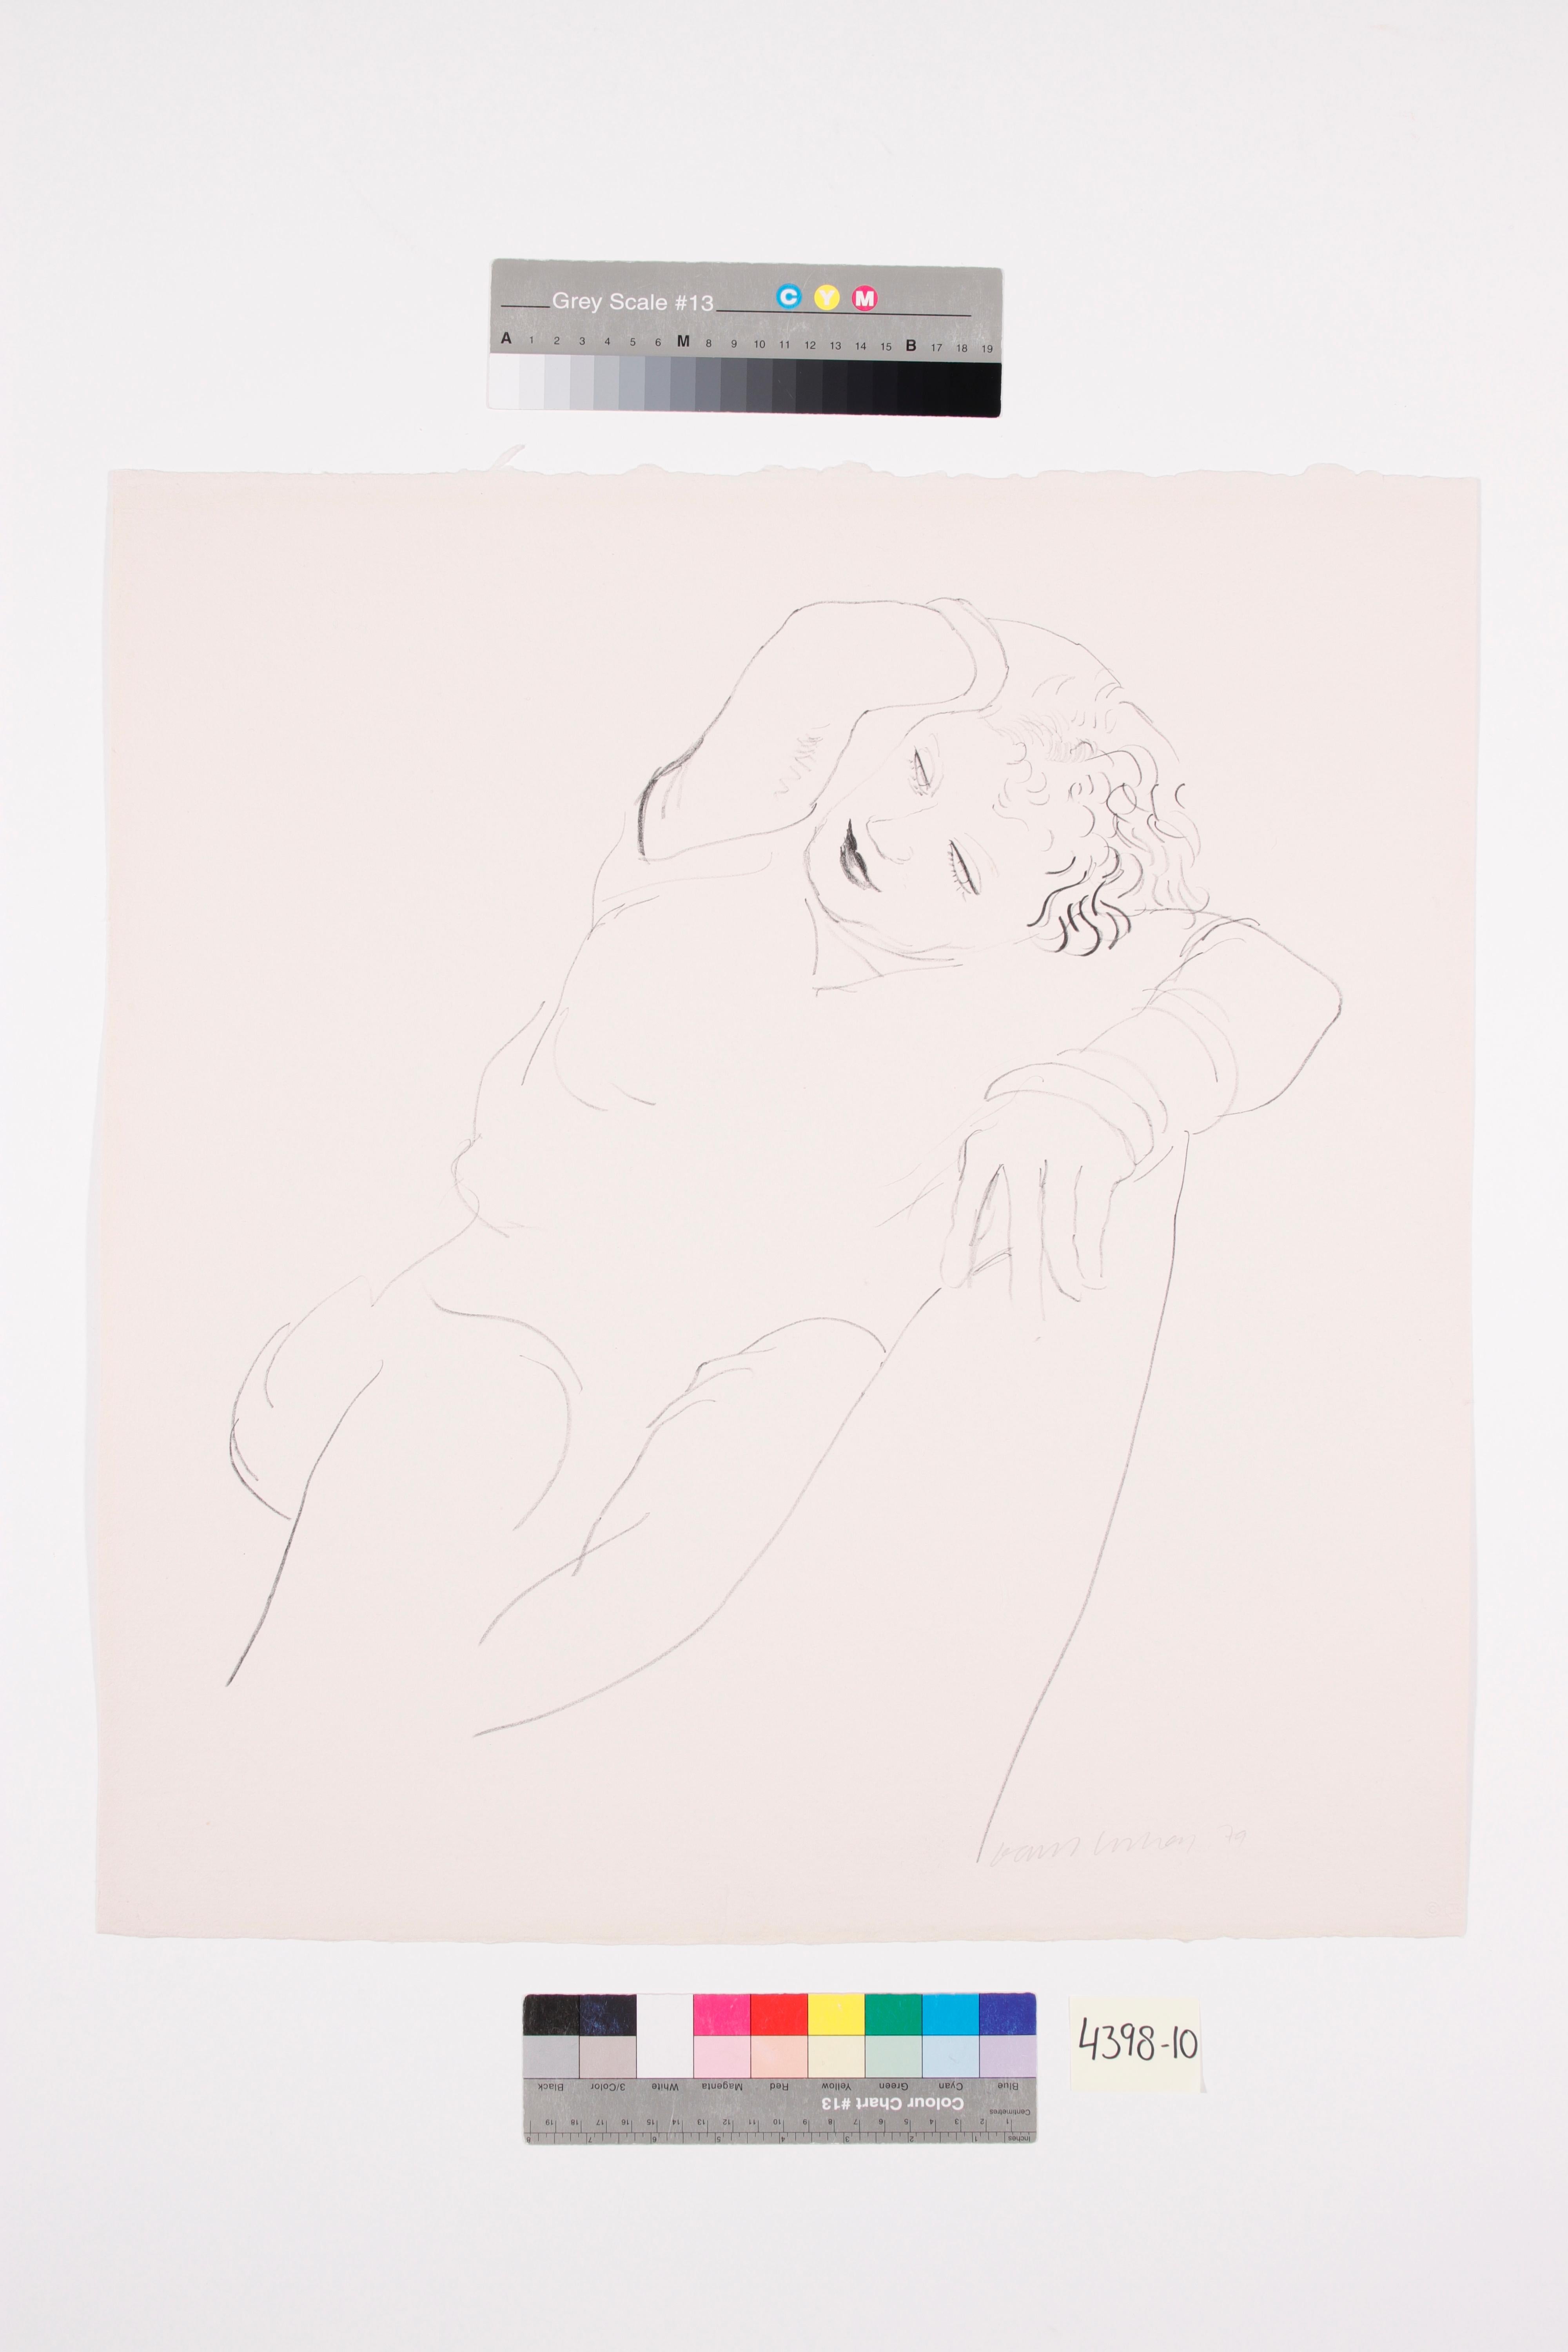 David Hockney - Celia couchée
Lithographie, 1979
Signée et datée au crayon.
Exemplaire non numéroté en dehors de l'édition numérotée de 100 (& 24 épreuves d'artiste).
Inscrit au crayon au verso de la feuille 